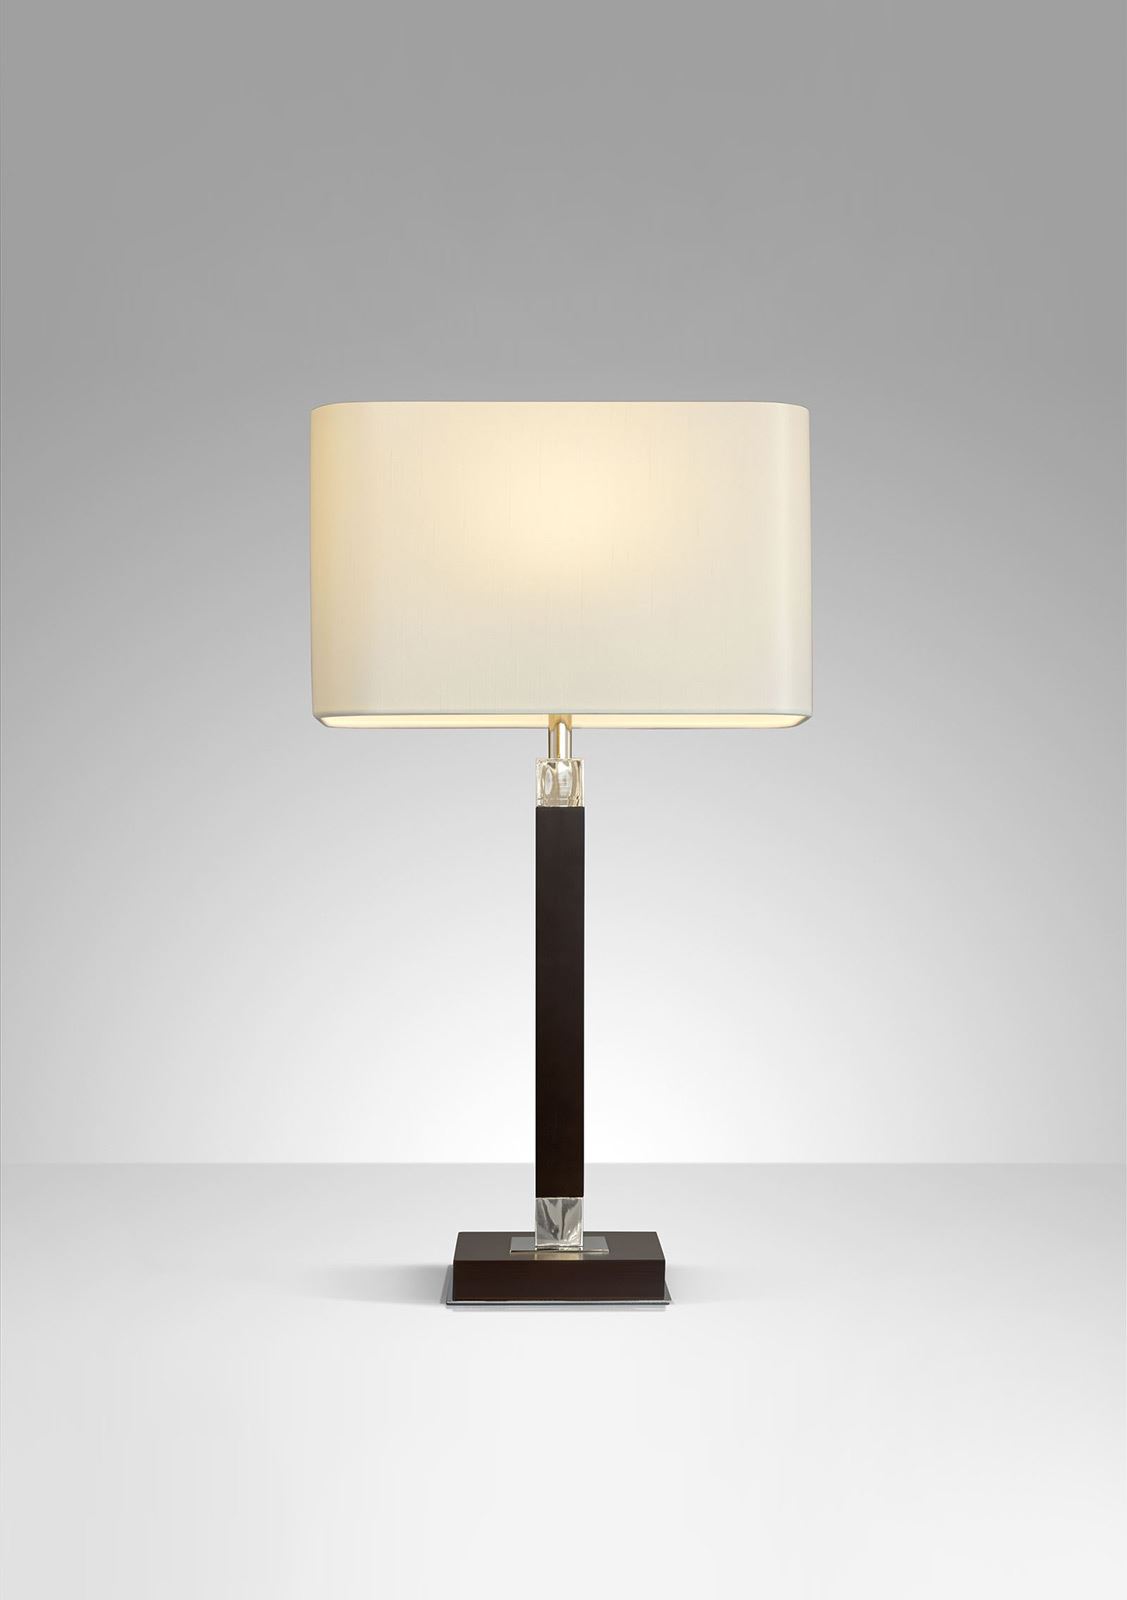 גופי תאורה בקטגוריית: מנורות שולחן  ,שם המוצר: גולדן אורנג'